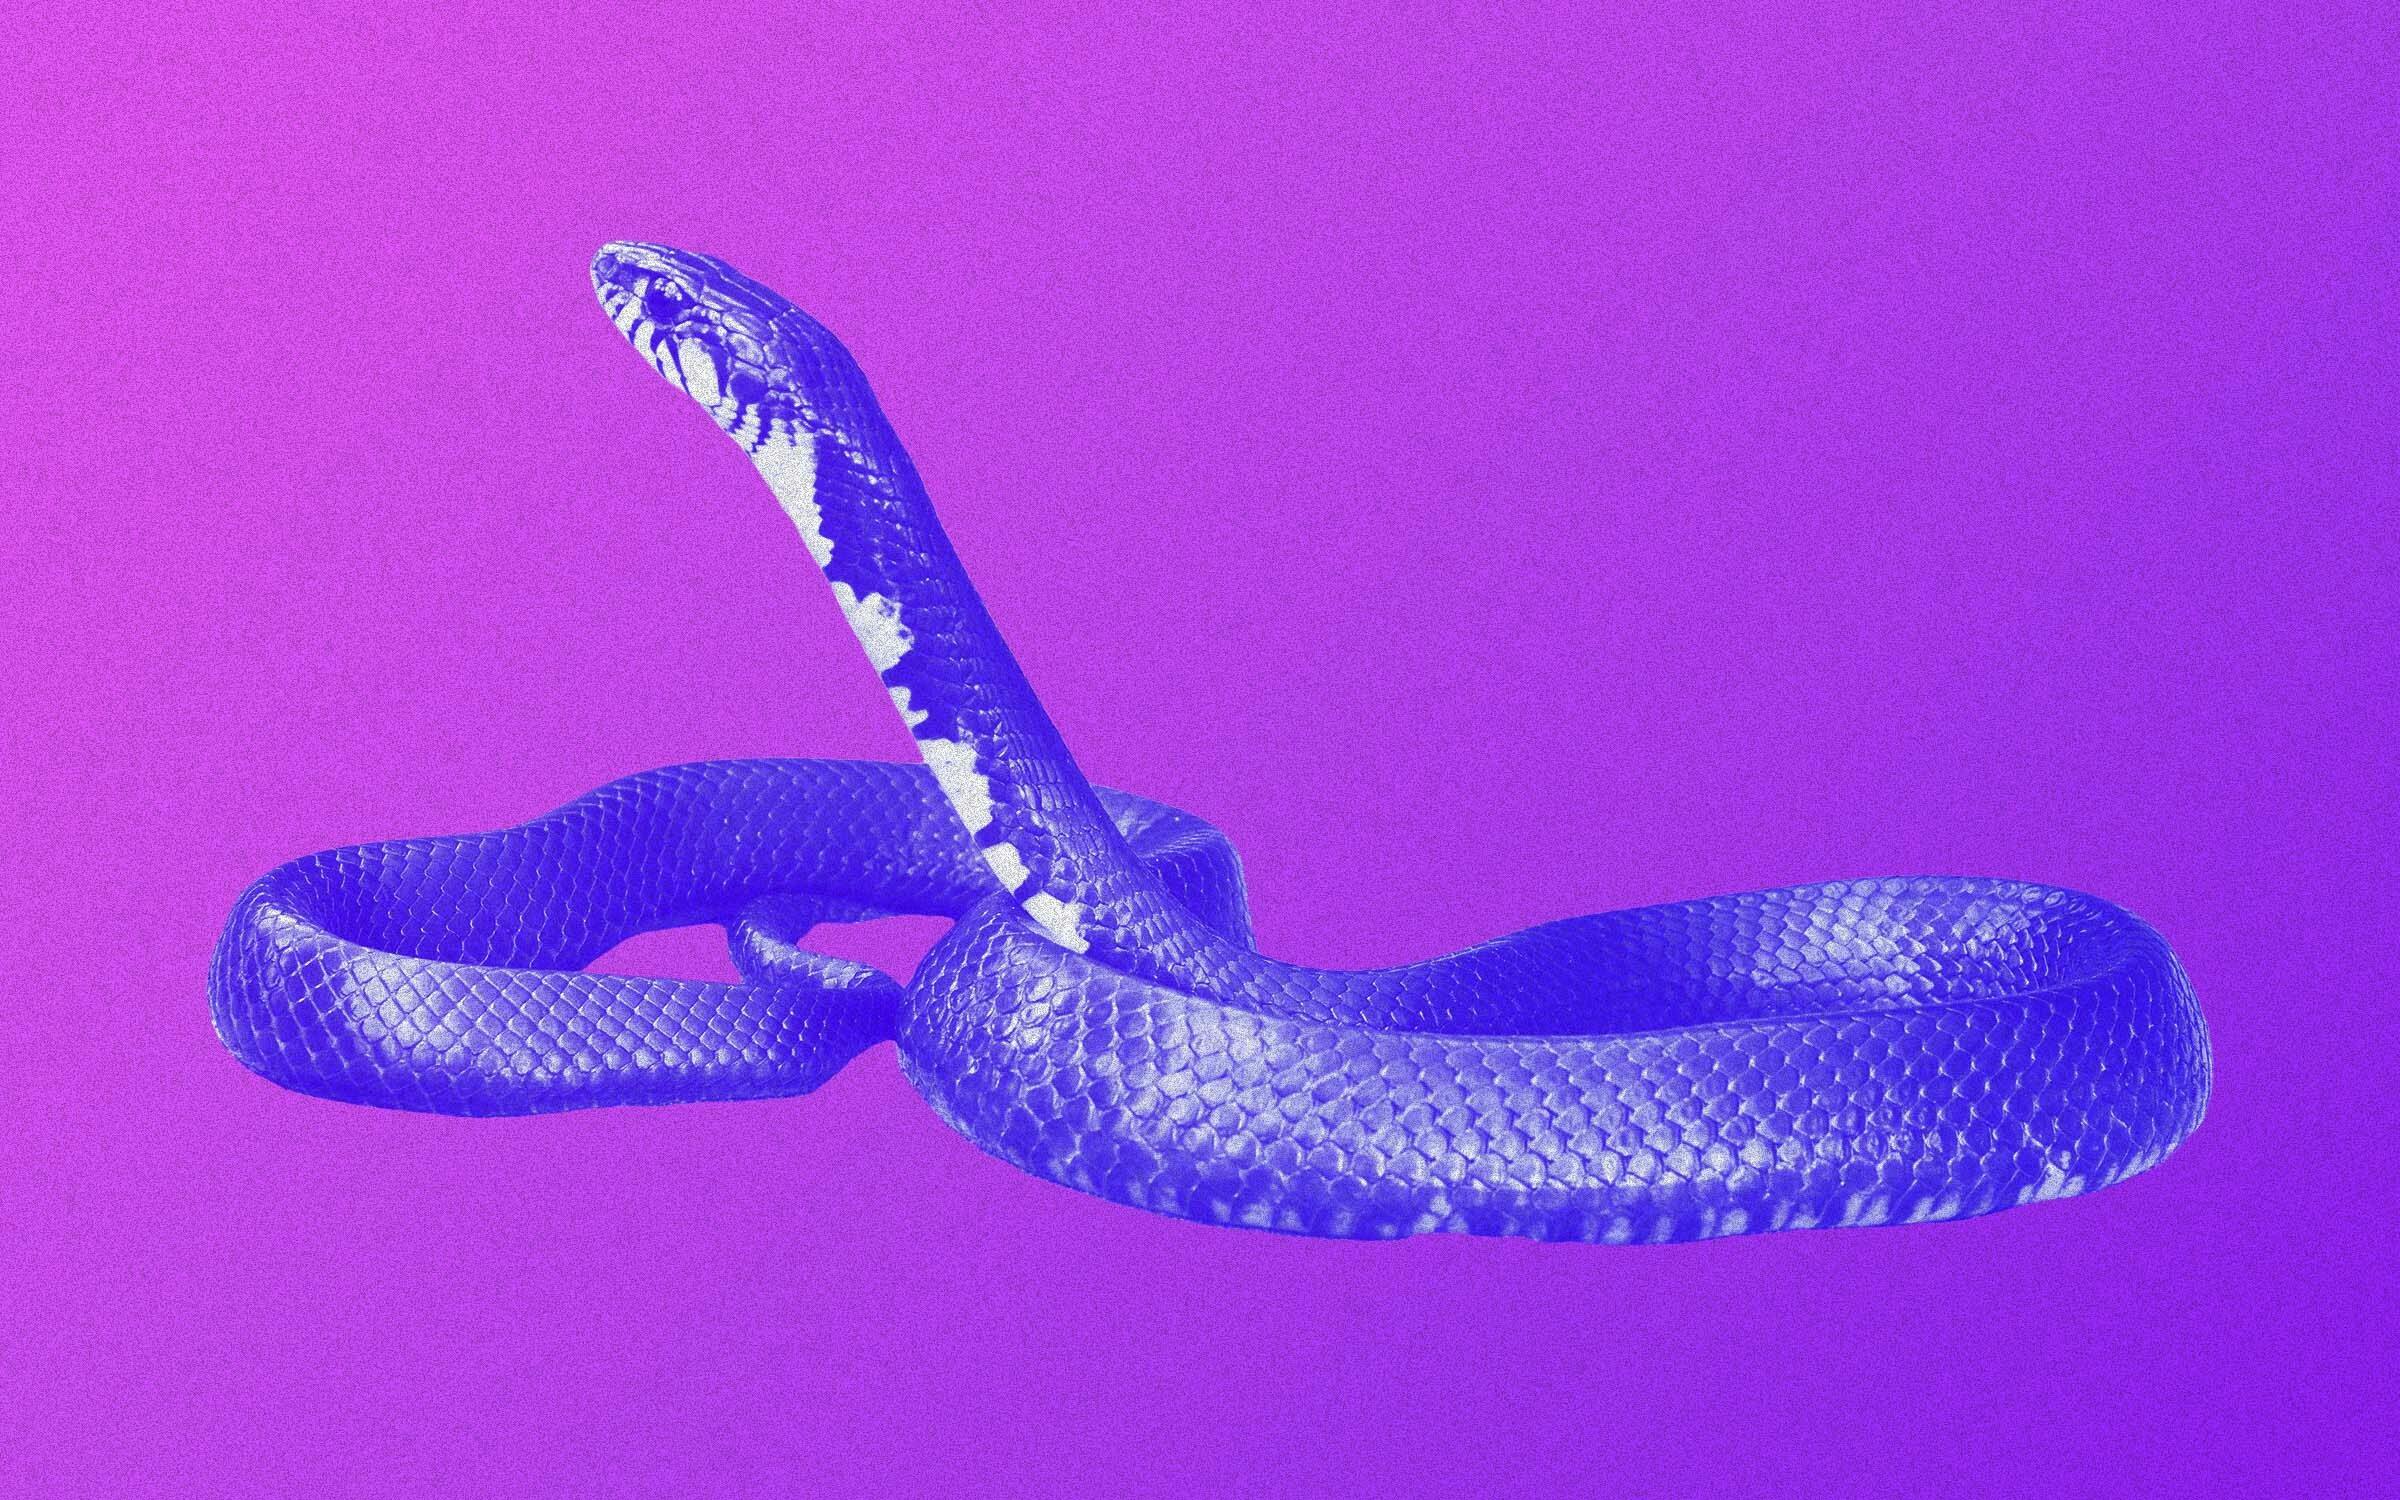 Tricks for Identifying Snakes